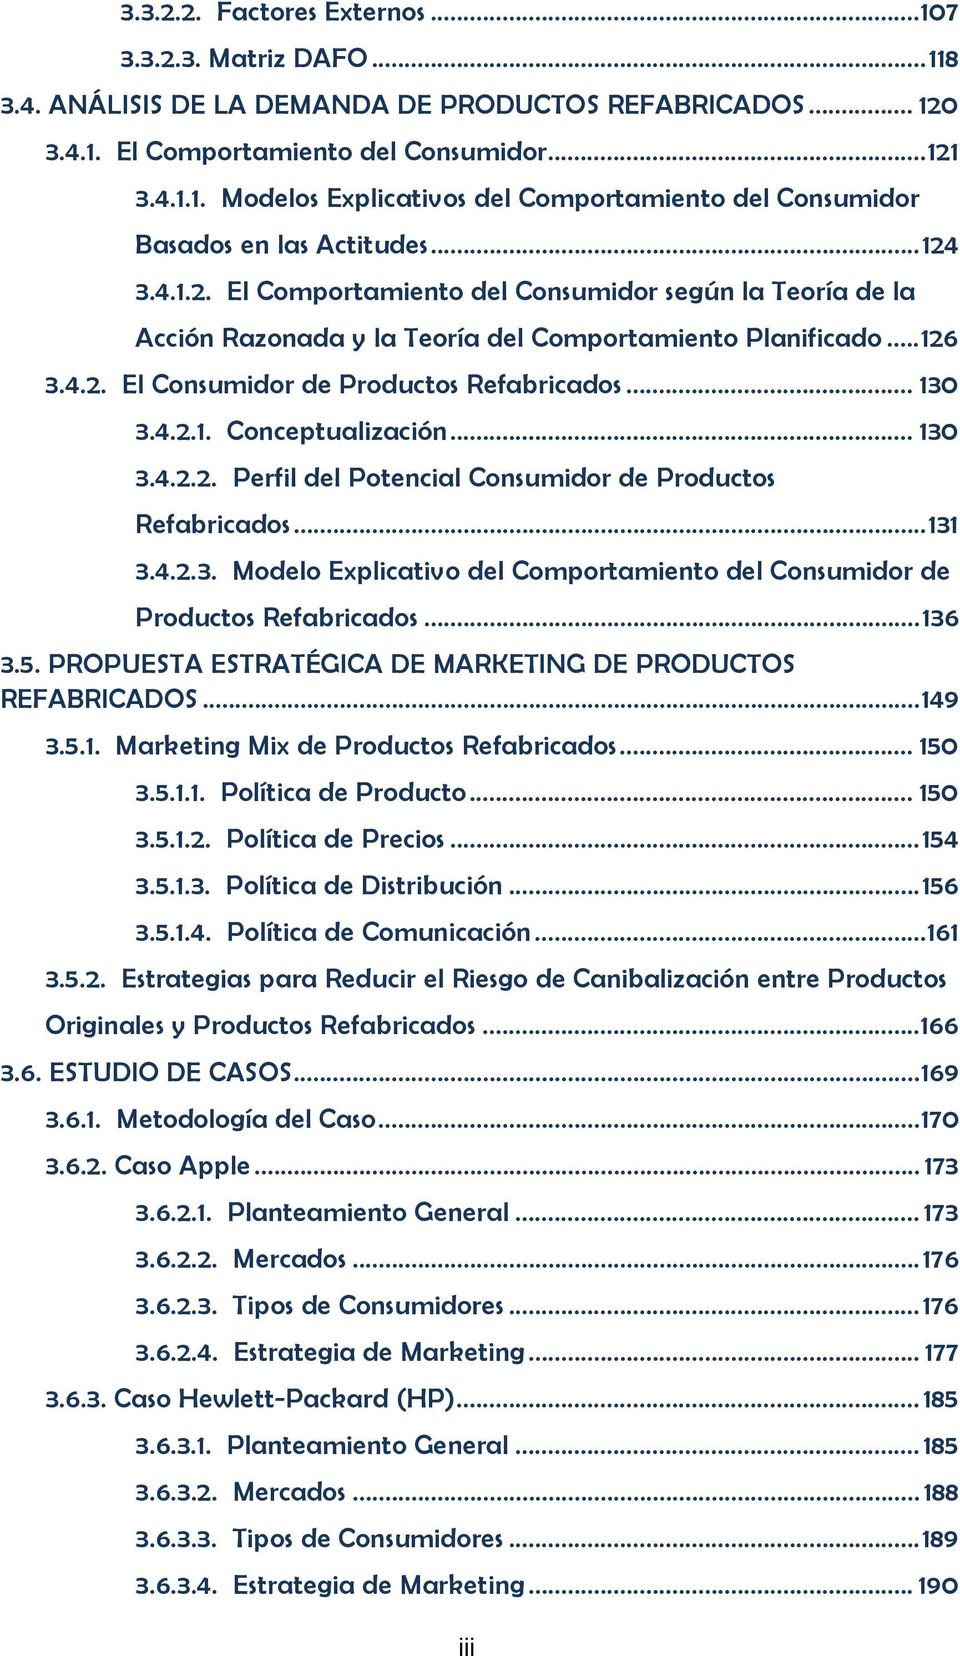 .. 130 3.4.2.2. Perfil del Potencial Consumidor de Productos Refabricados...131 3.4.2.3. Modelo Explicativo del Comportamiento del Consumidor de Productos Refabricados...136 3.5.